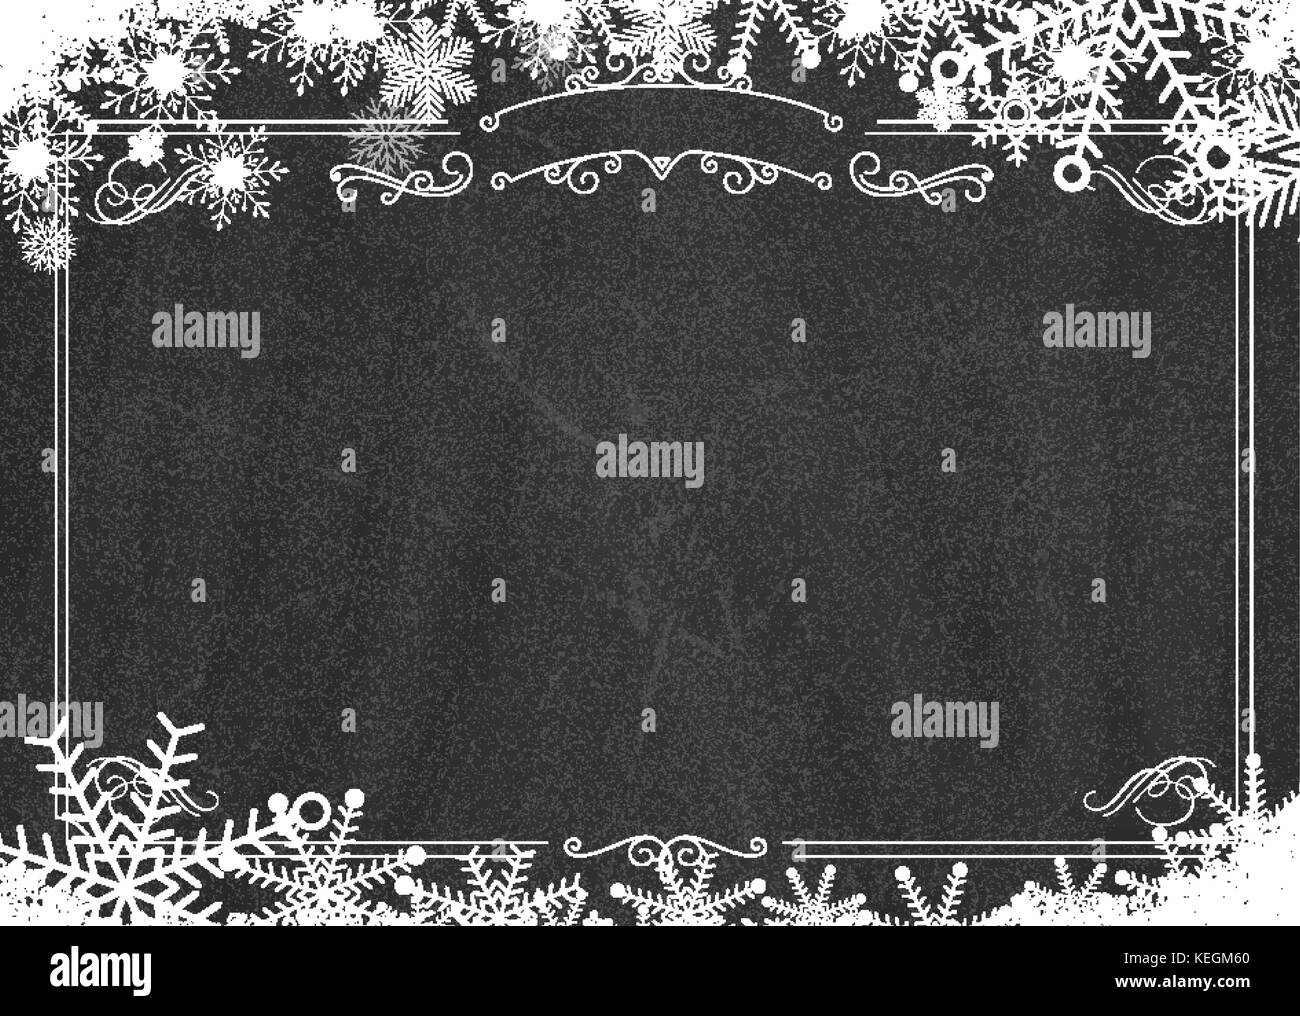 Format A3 cafe Menü - Weihnachten Winter Schneeflocke, retro Grenze und Blackboard strukturierten Hintergrund Stock Vektor